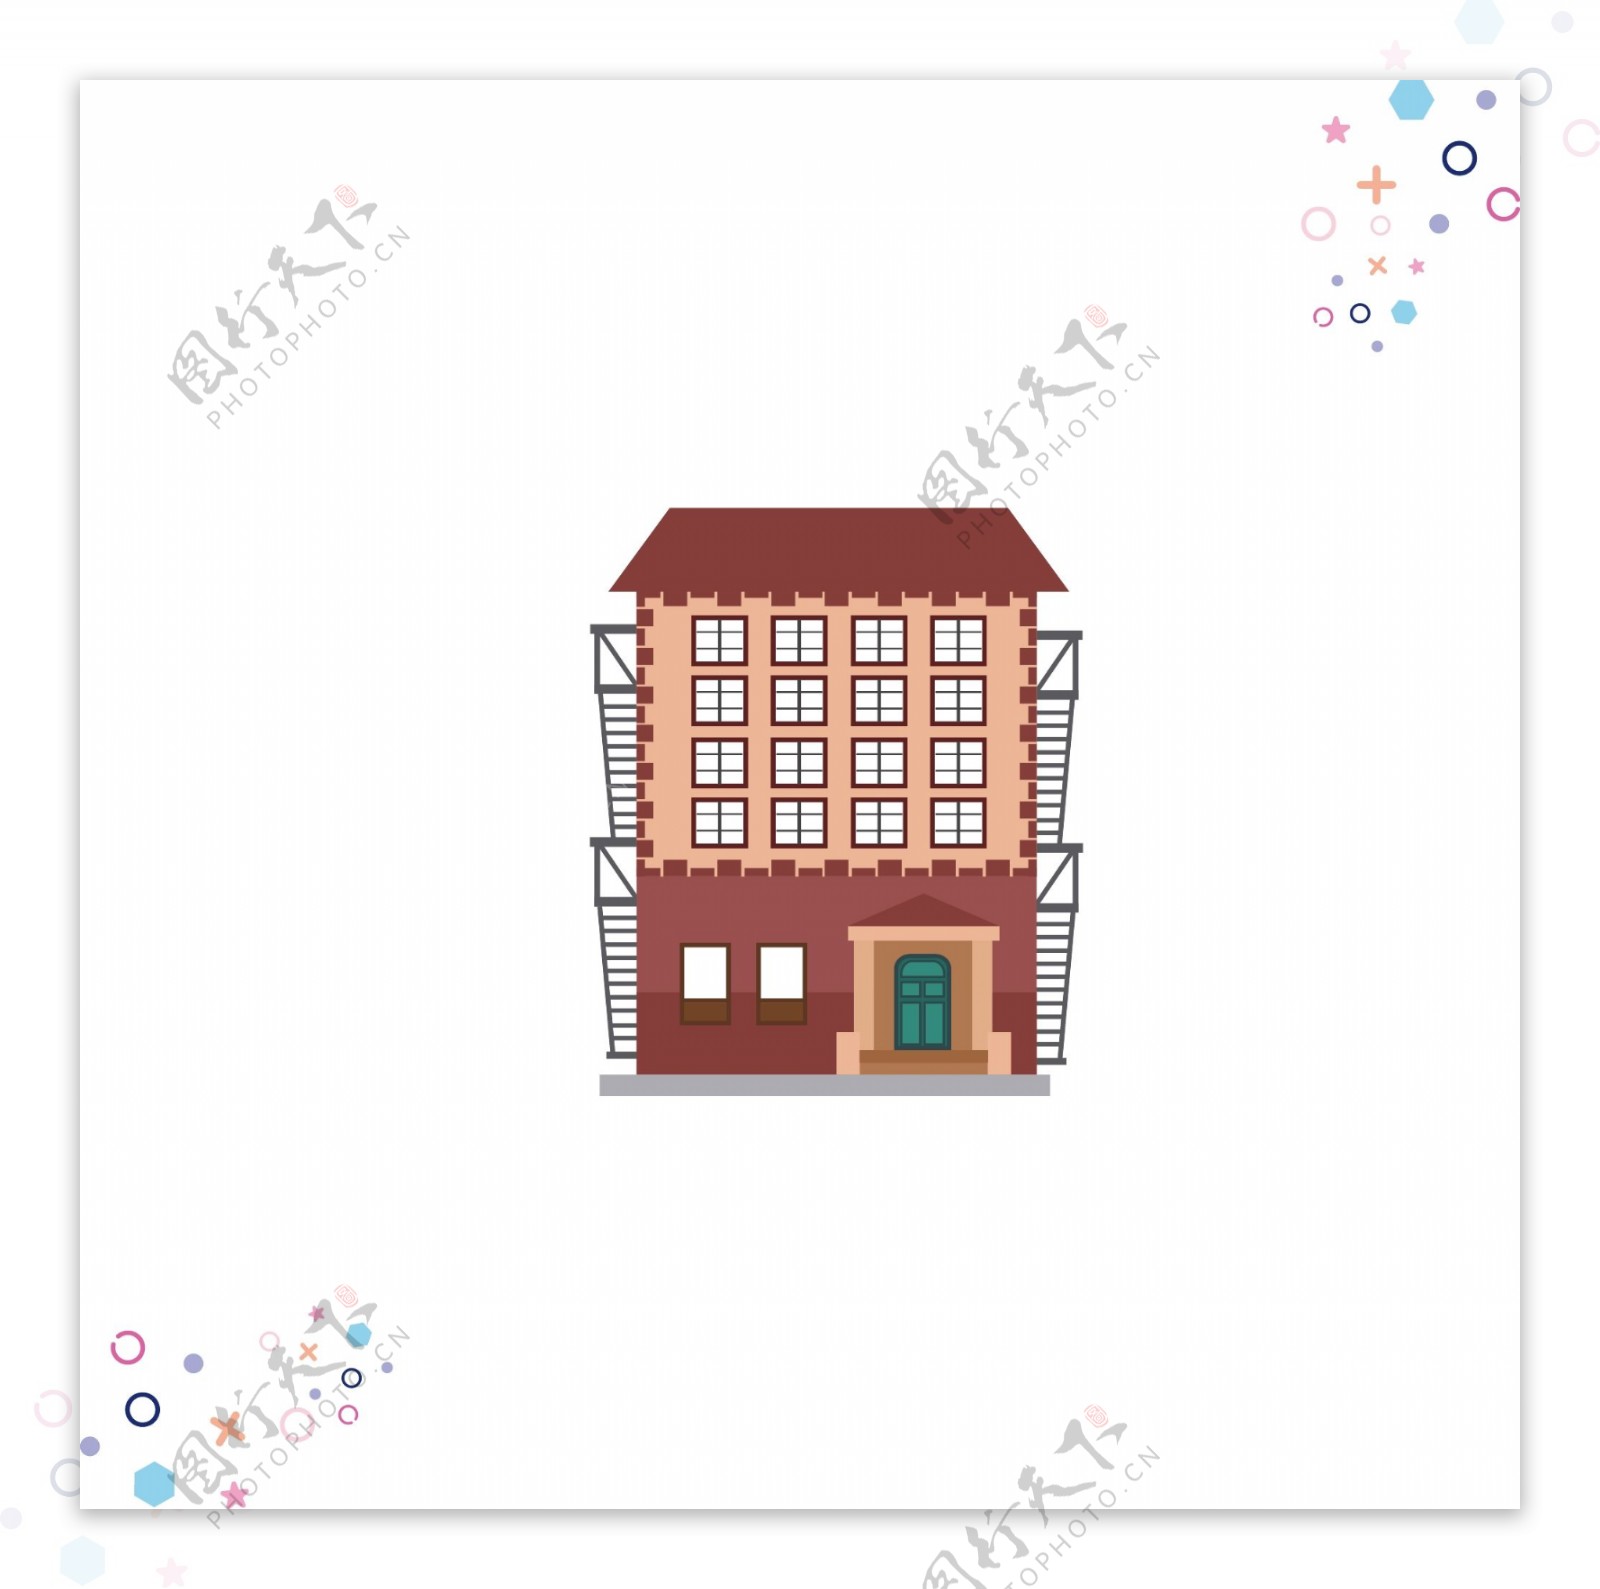 房子建筑物卡通手绘矢量背景元素组合1